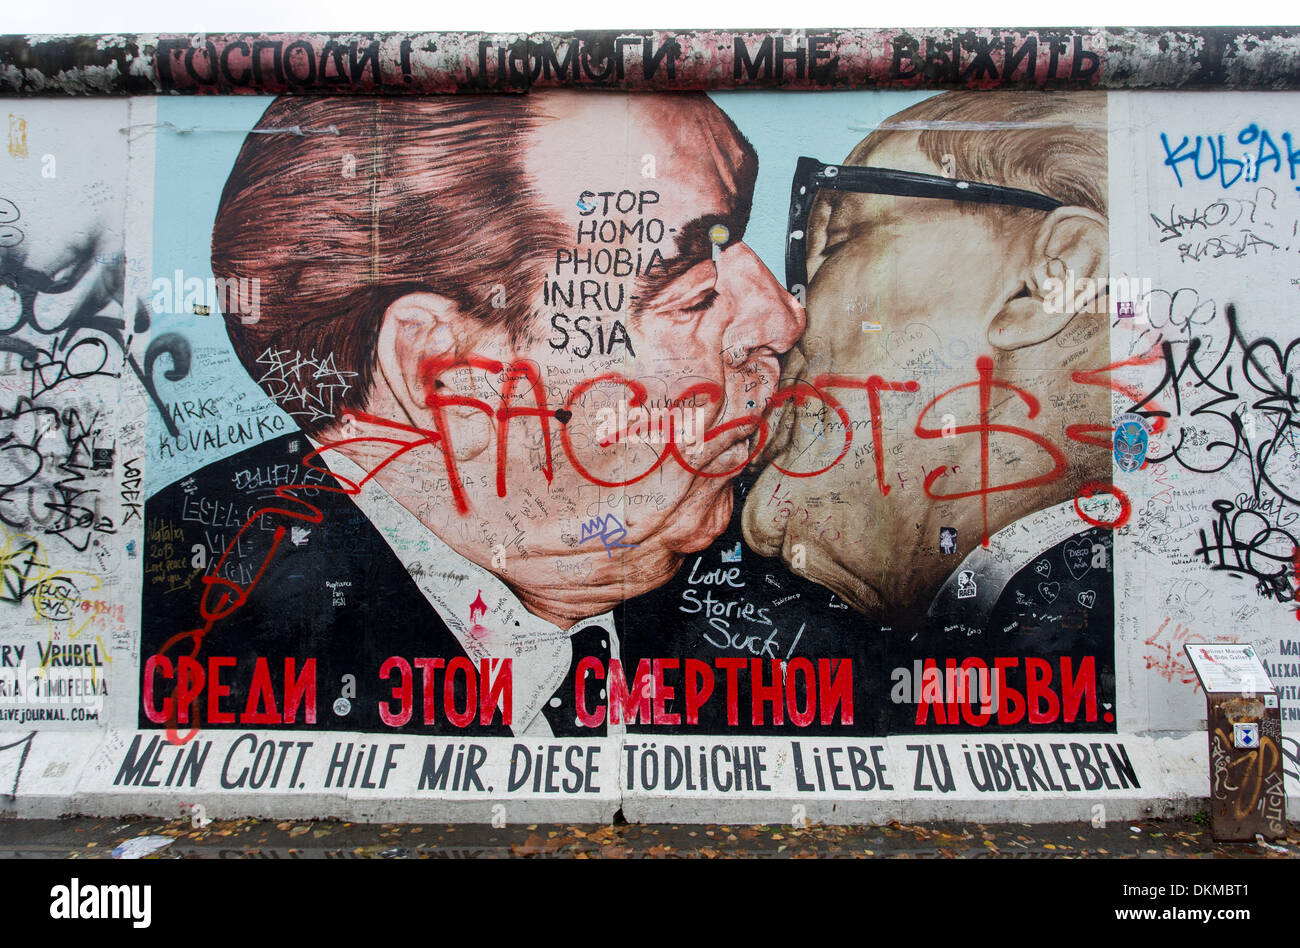 Resultado de imagen de urban art berlin stop homophobia